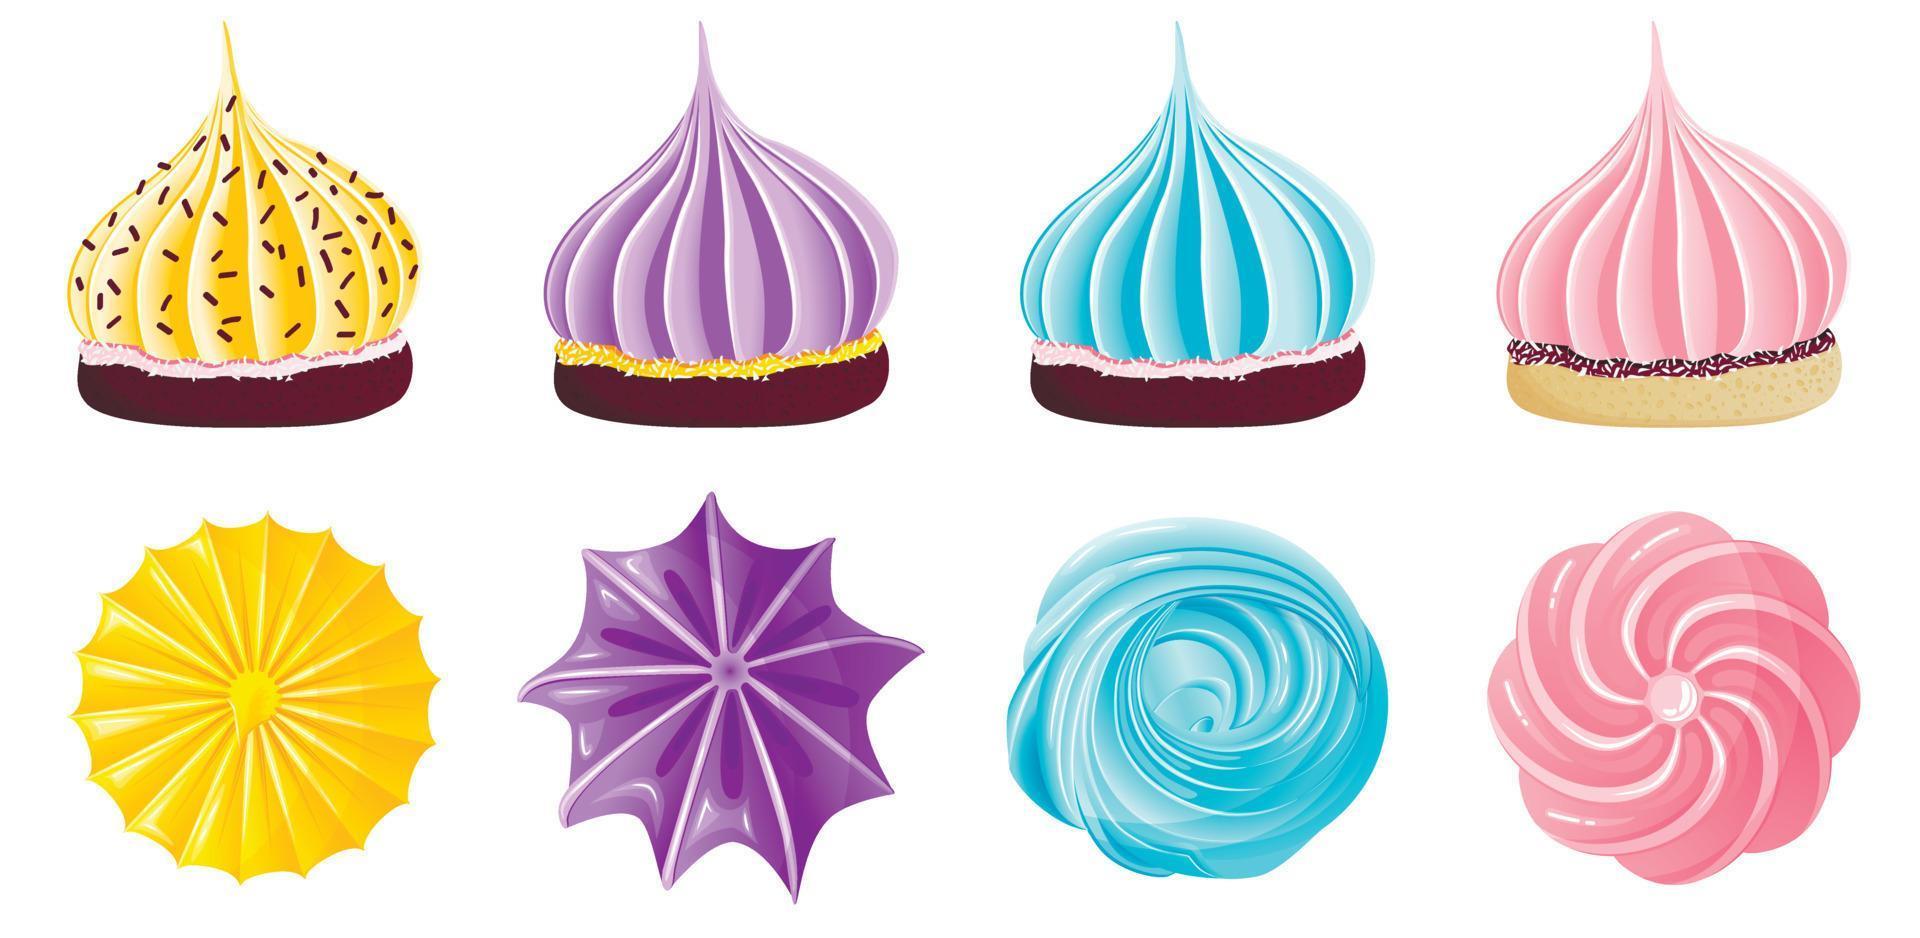 colección de apetitosos merengues coloridos sobre galletas en estilo plano vista superior y lateral vector